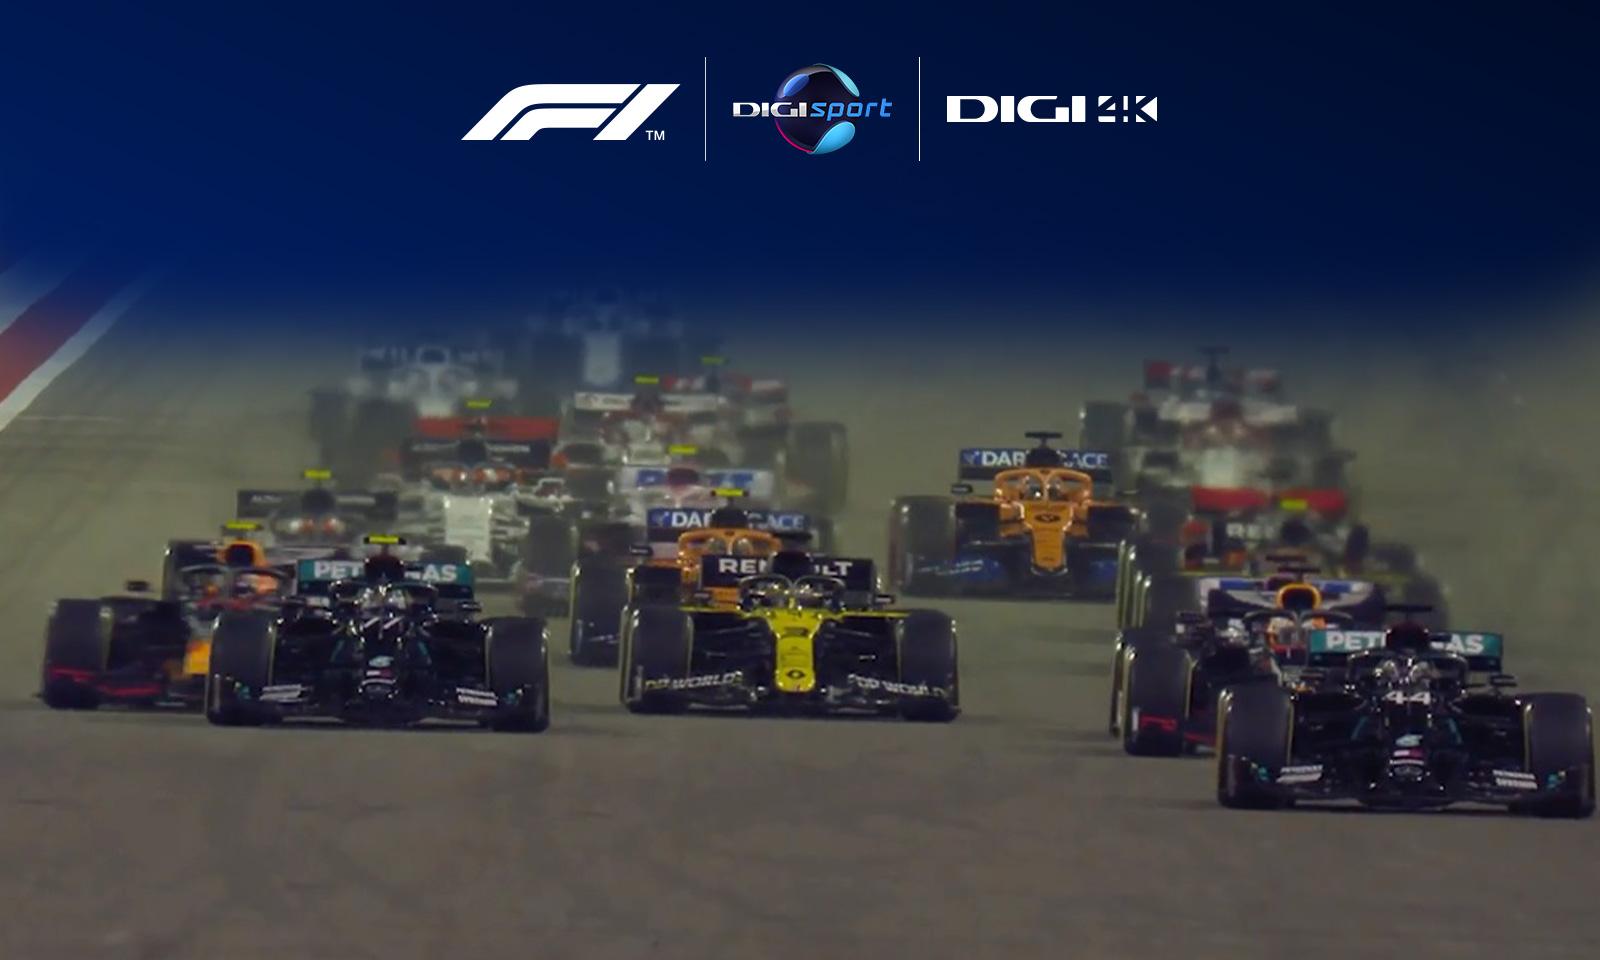 Un nou sezon al Campionatului Mondial de Formula 1 ia startul în direct, la Digi Sport și Digi 4K